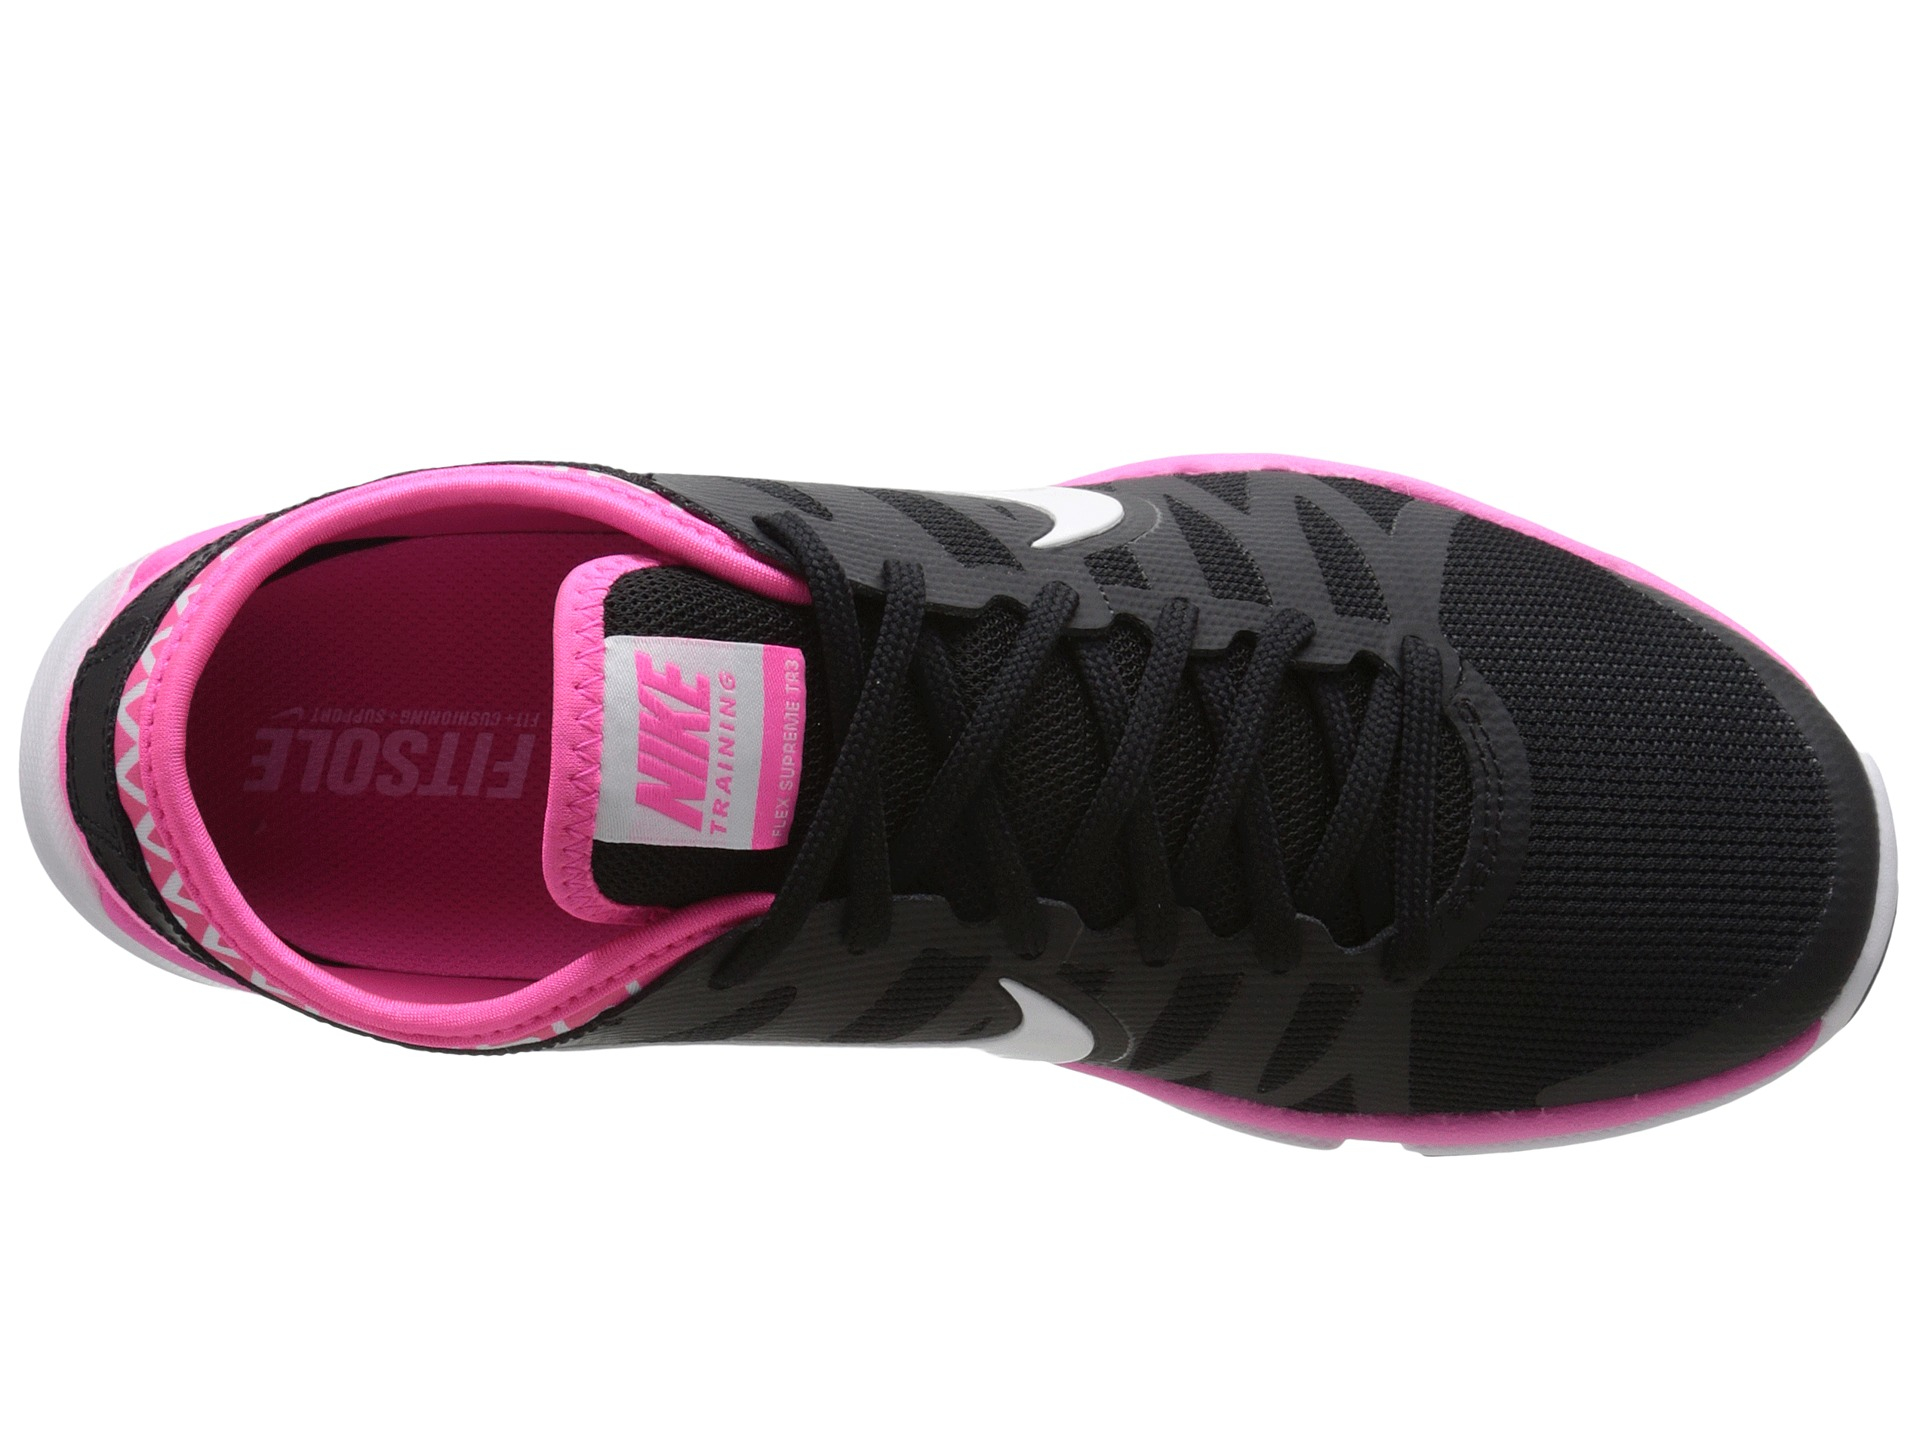 Nike Flex Supreme Tr 3 in Black | Lyst